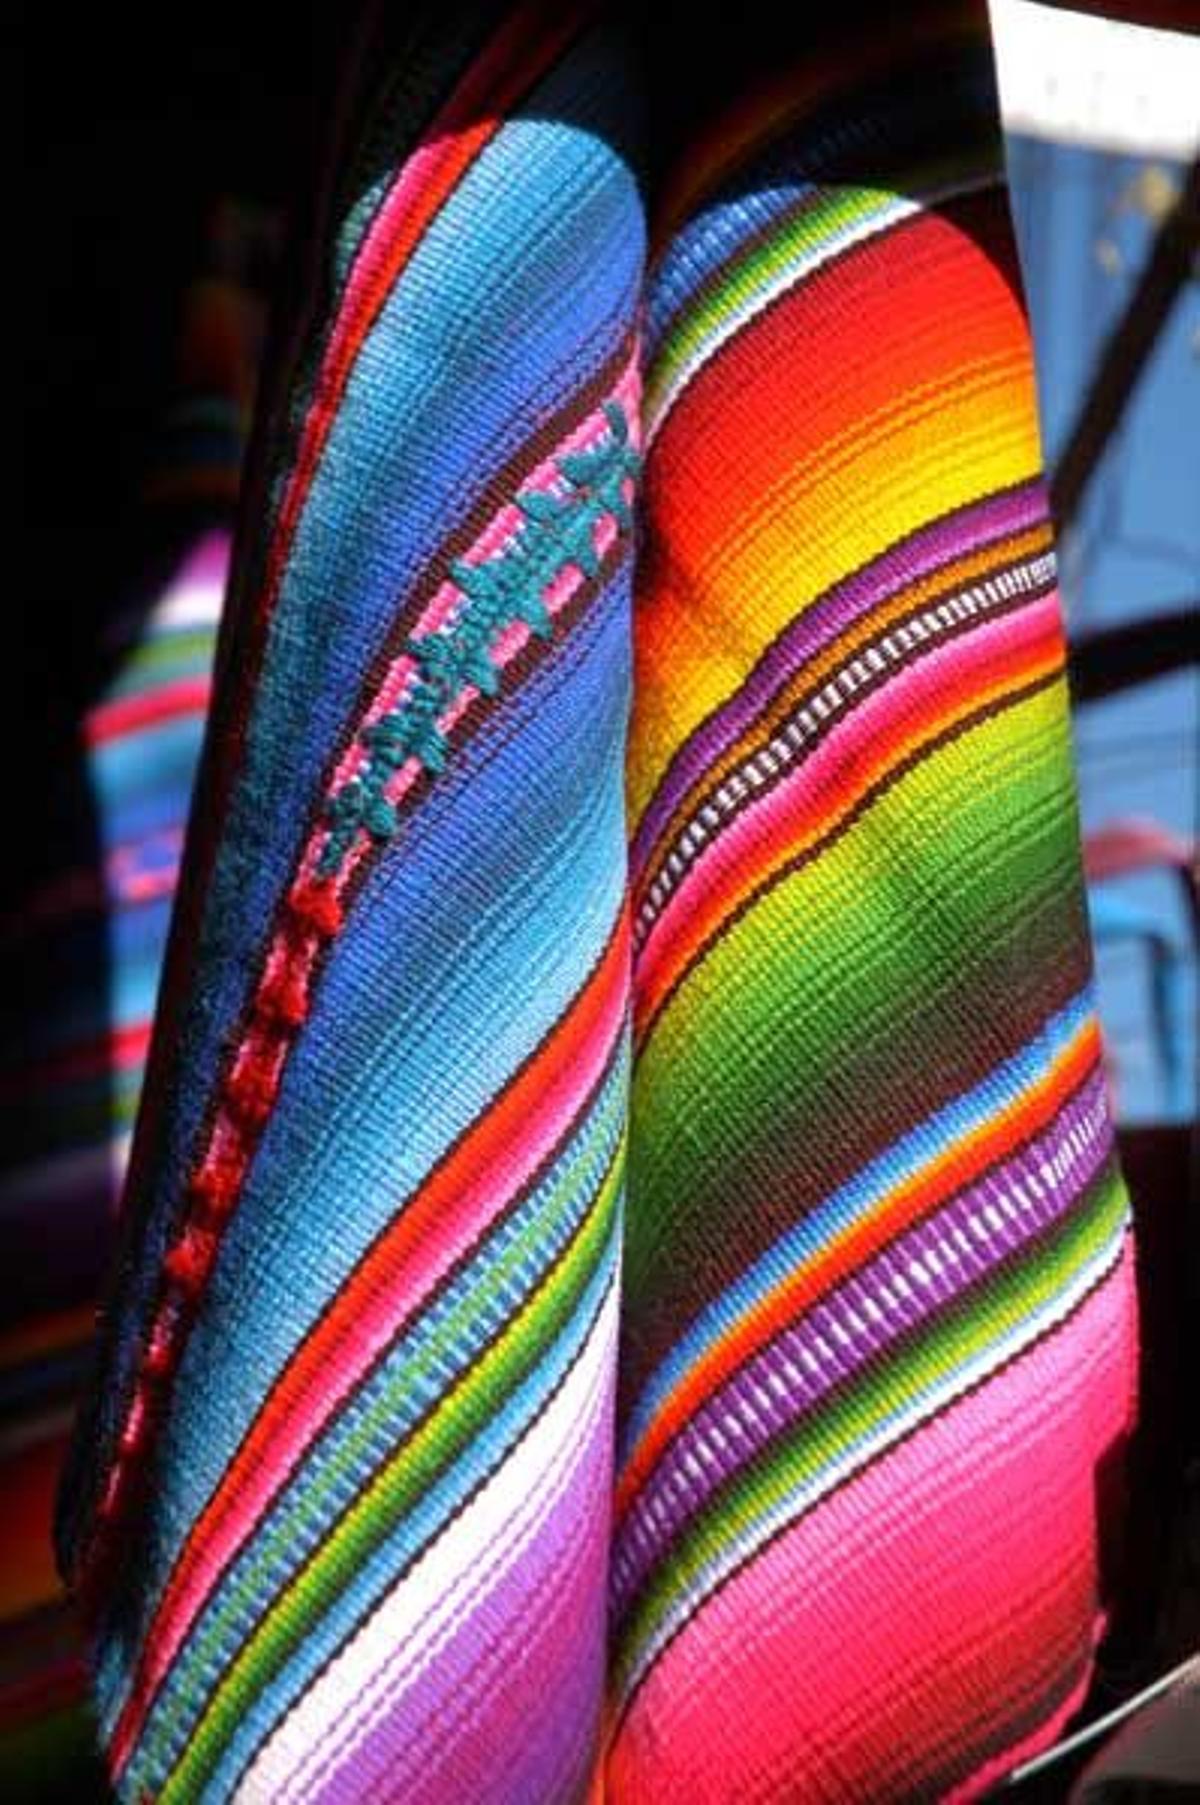 Tejido artesanal típico de Guatemala.